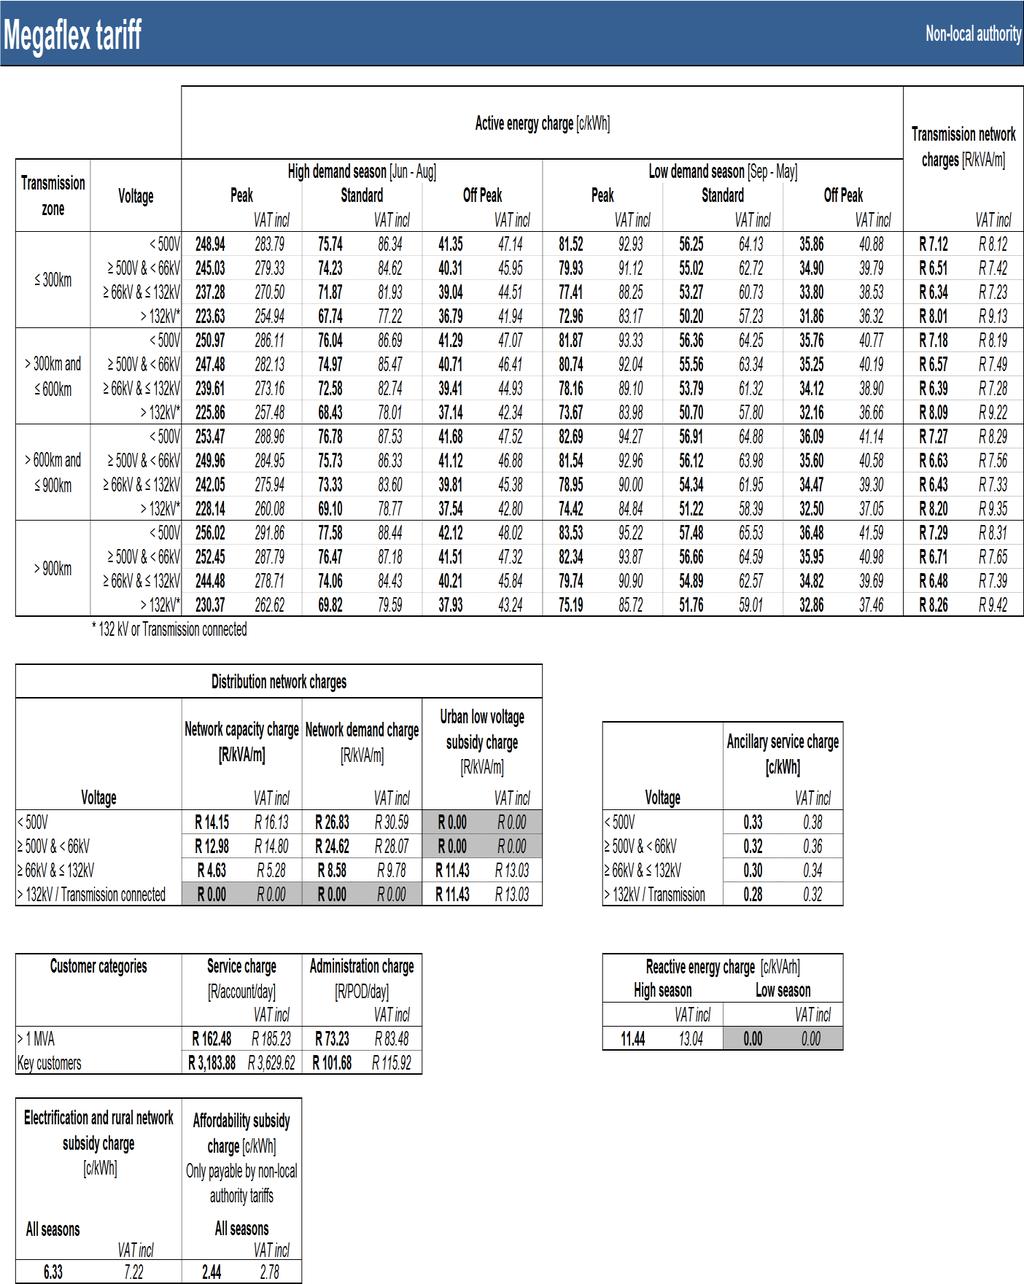 Table 23: Megaflex non-local authority tariff SC0207(2015/16) Eskom